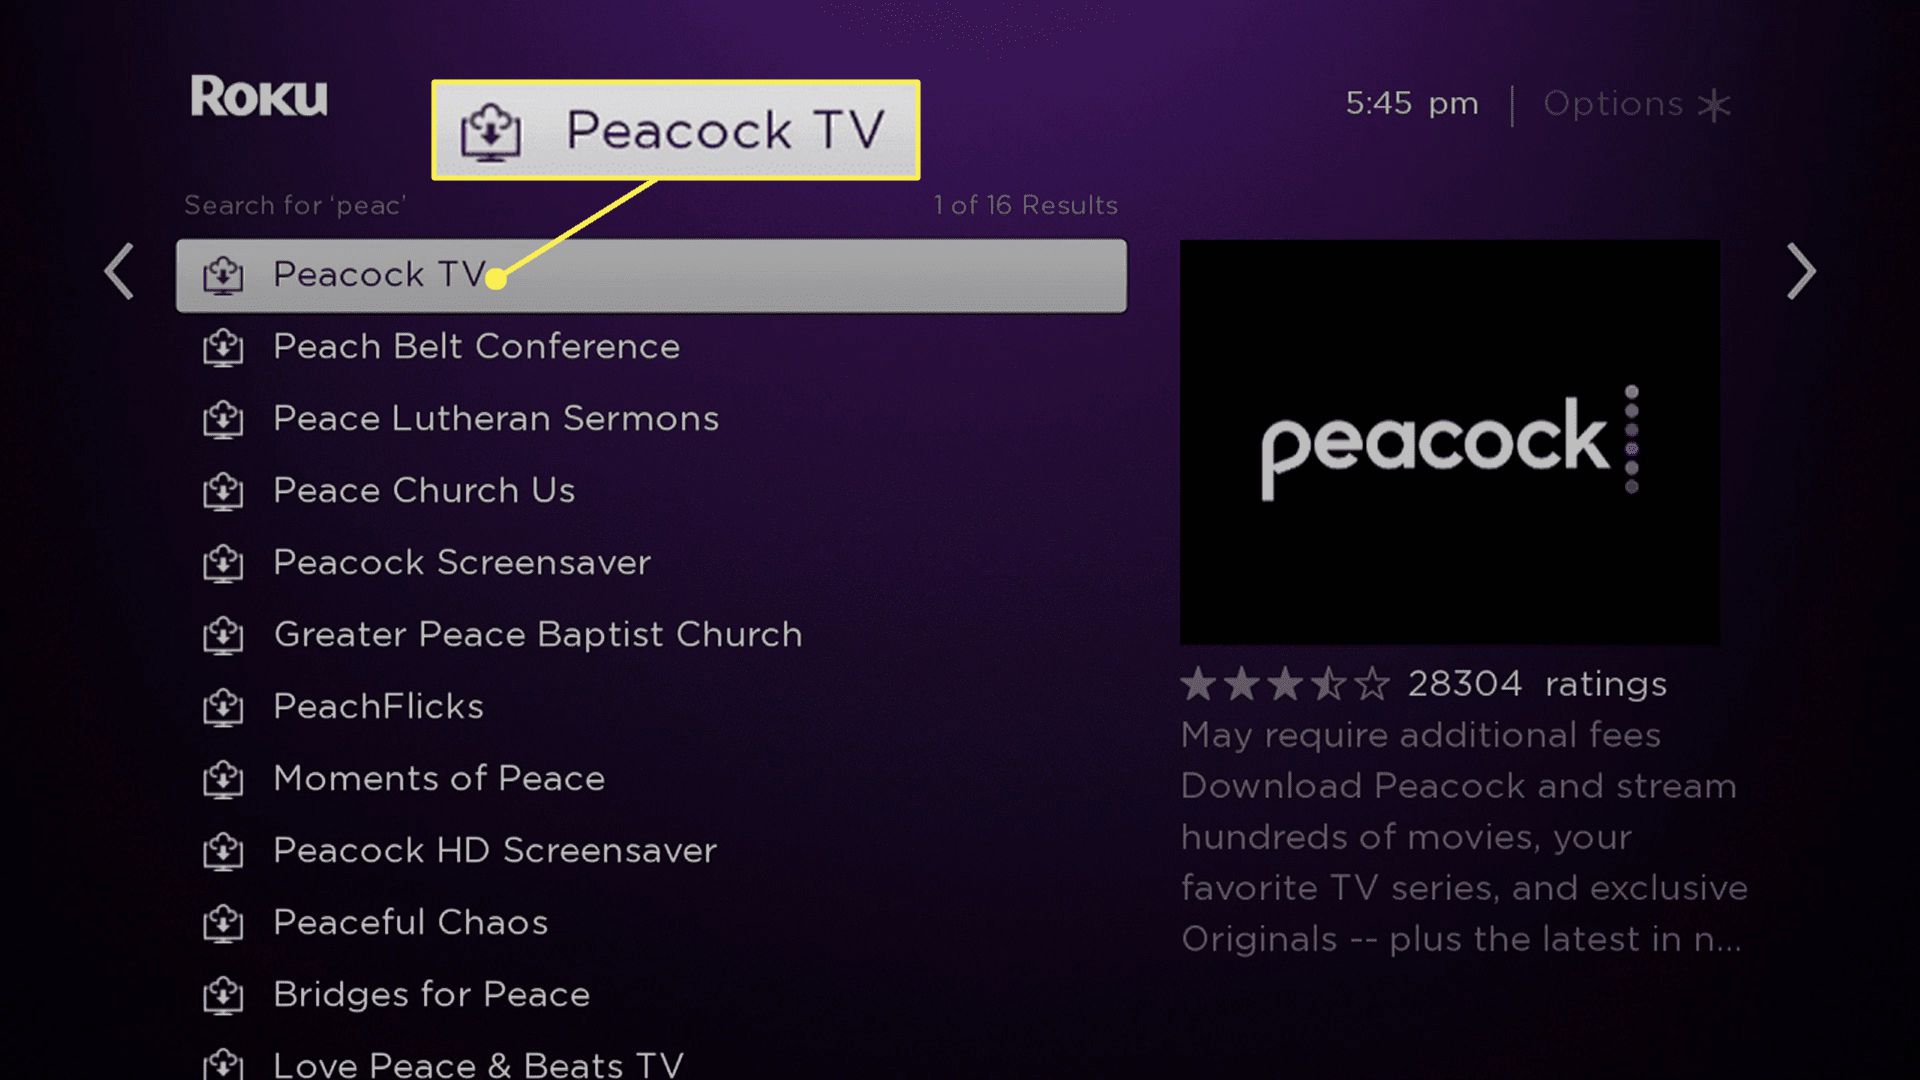 Roku-zoekresultaten met Peacock TV gemarkeerd.